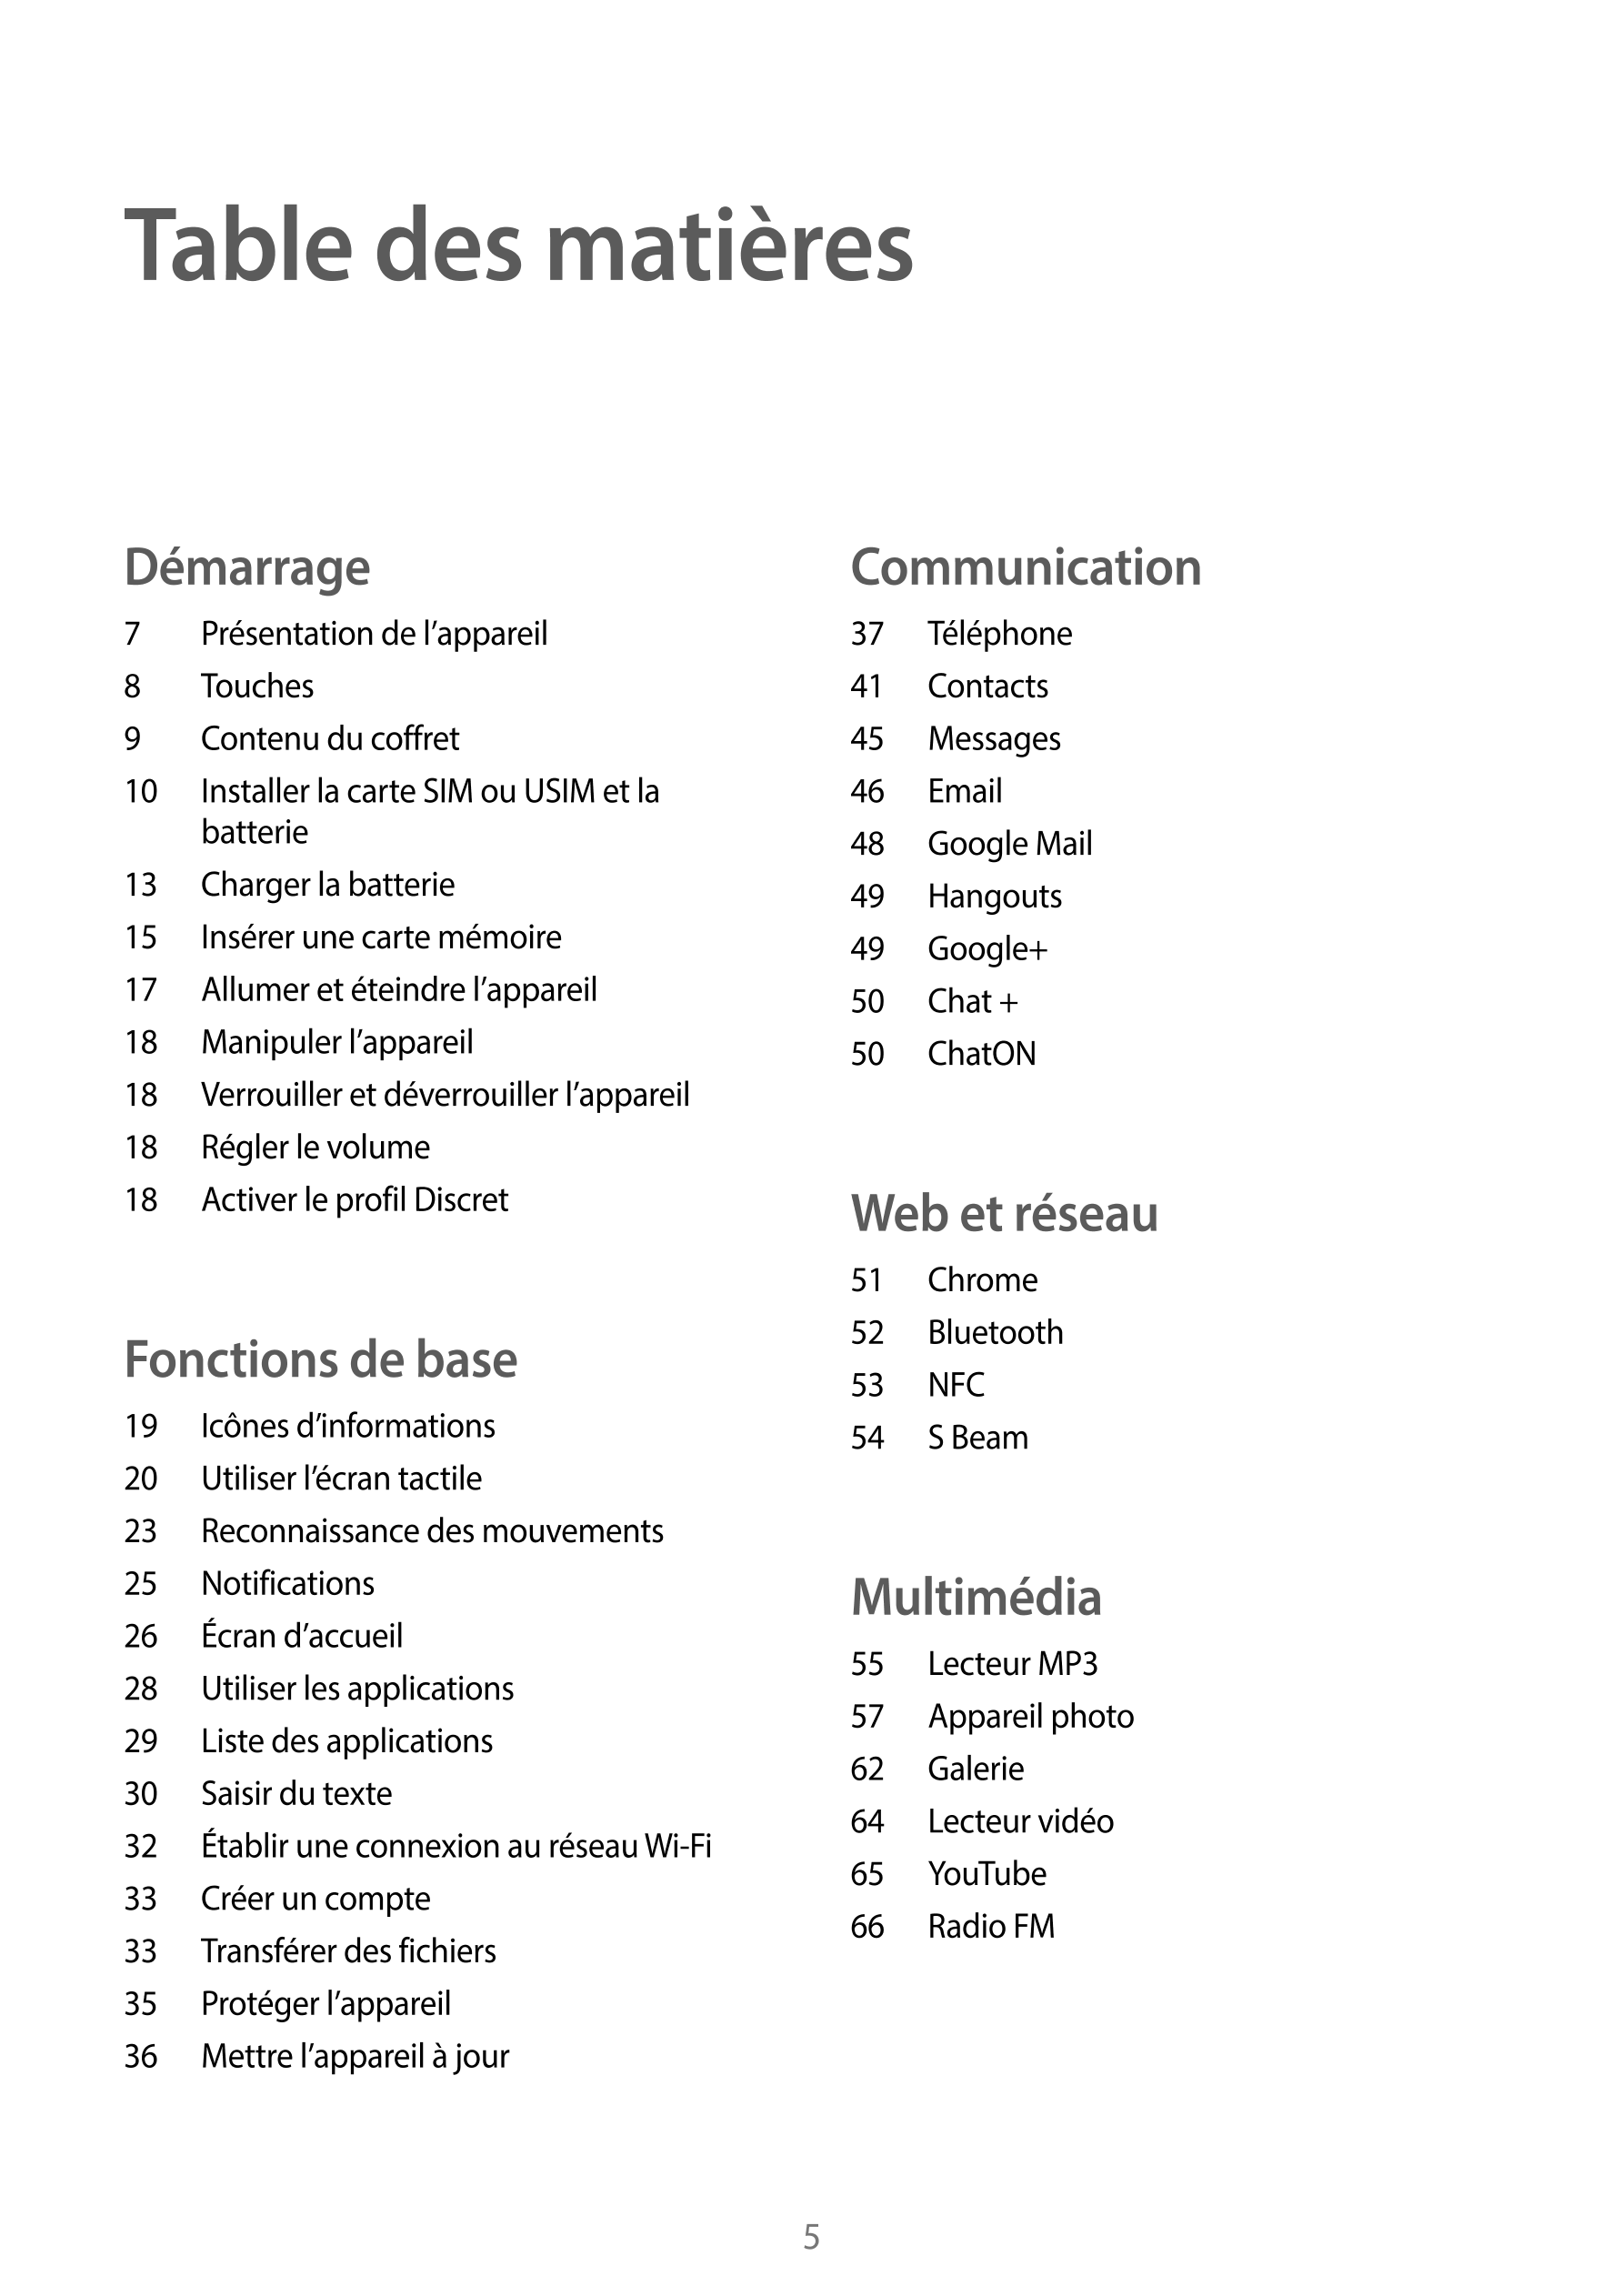 Table des matières
Démarrage Communication
7  Présentation de l’appareil 37  Téléphone
8  Touches 41  Contacts
9  Contenu du cof